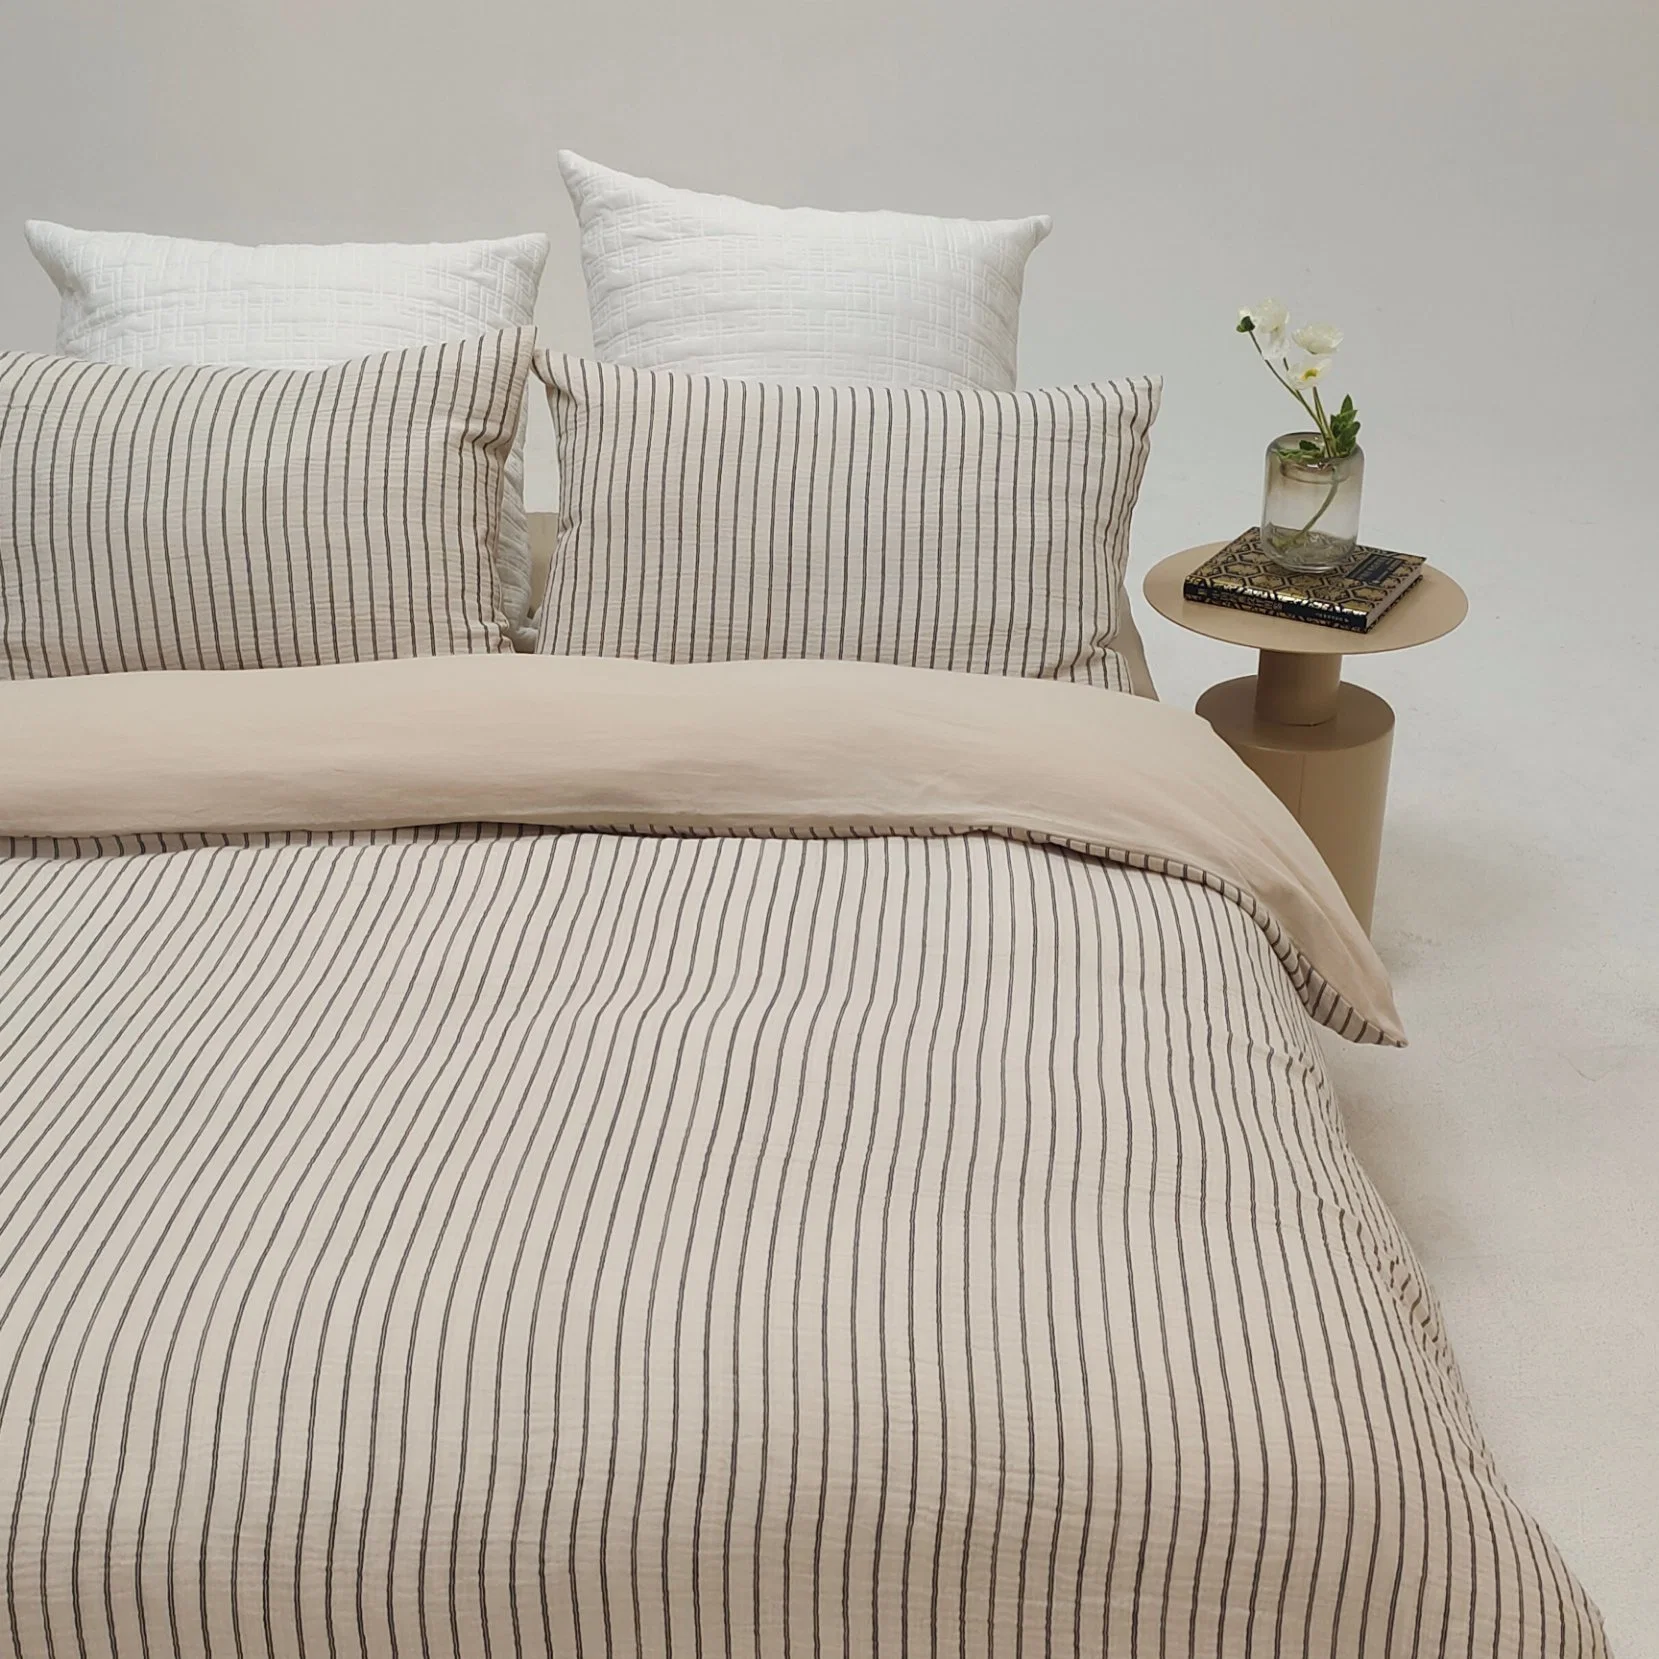 Home Textile Bedding Set 100% Organic Cotton Stripe Muslin Double Gauze 3PCS Duvet Cover Set